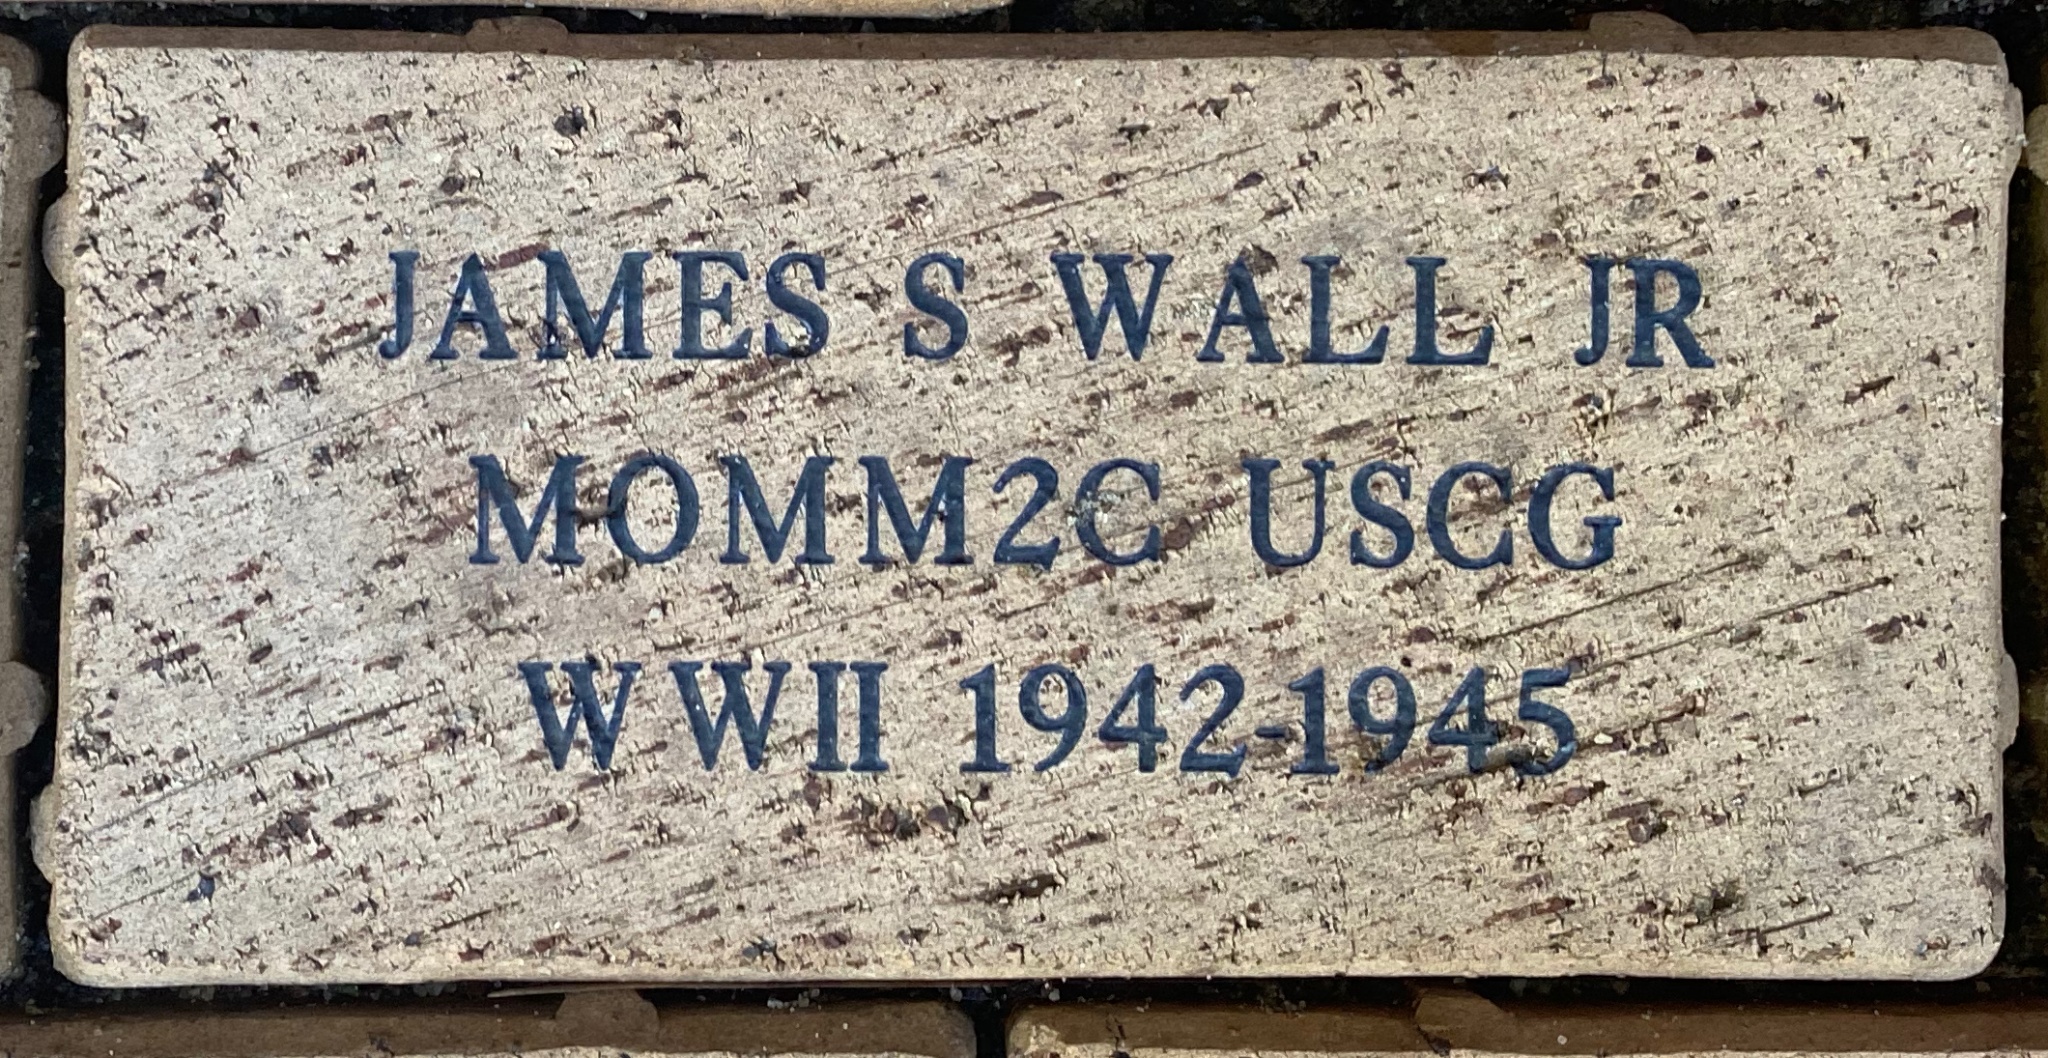 JAMES S WALL JR MOMM2C USCG WWII 1942-1945